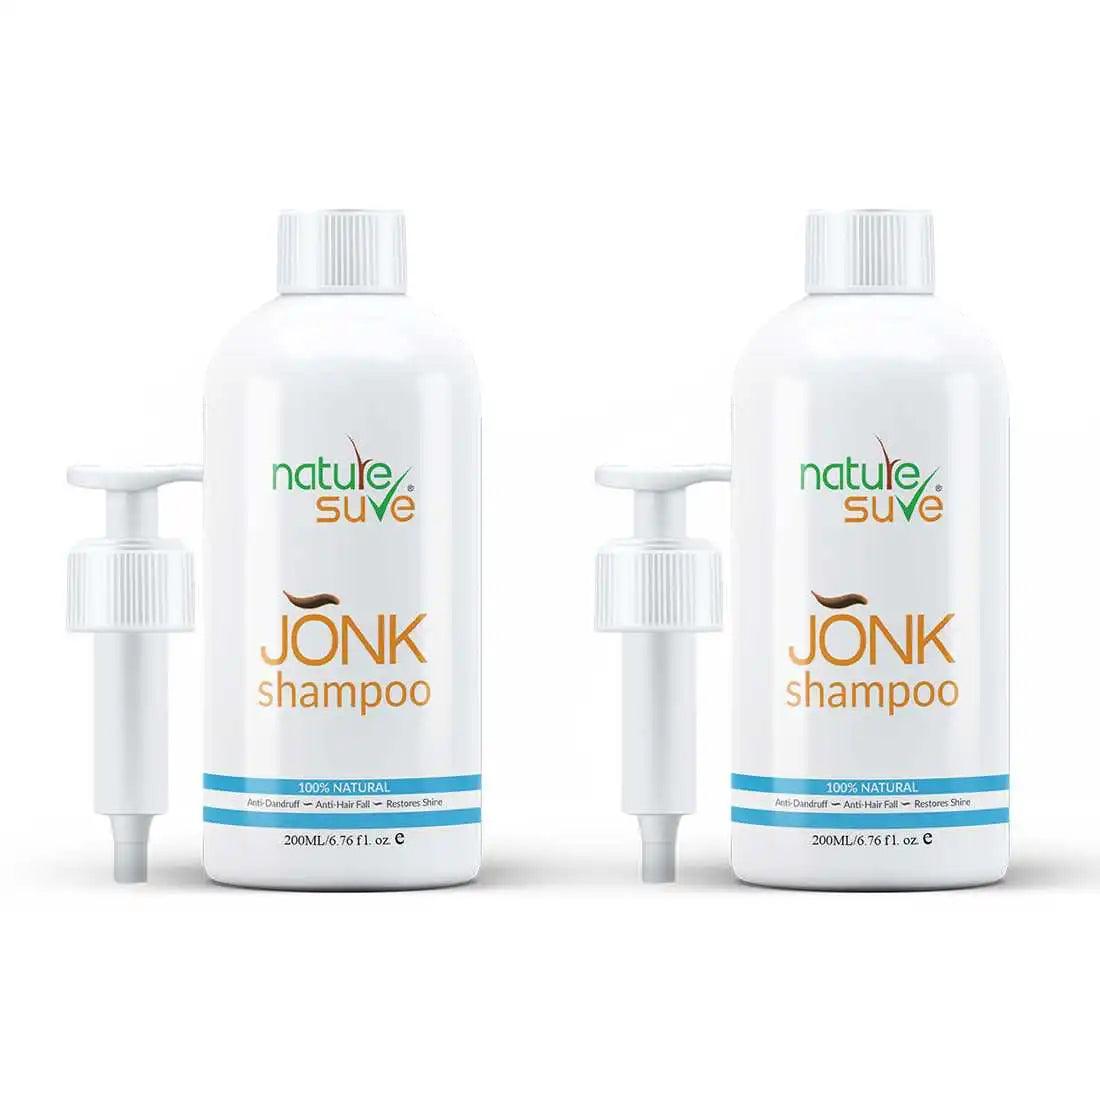 Nature Sure Jonk Shampoo Hair Cleanser for Men & Women - 200ml